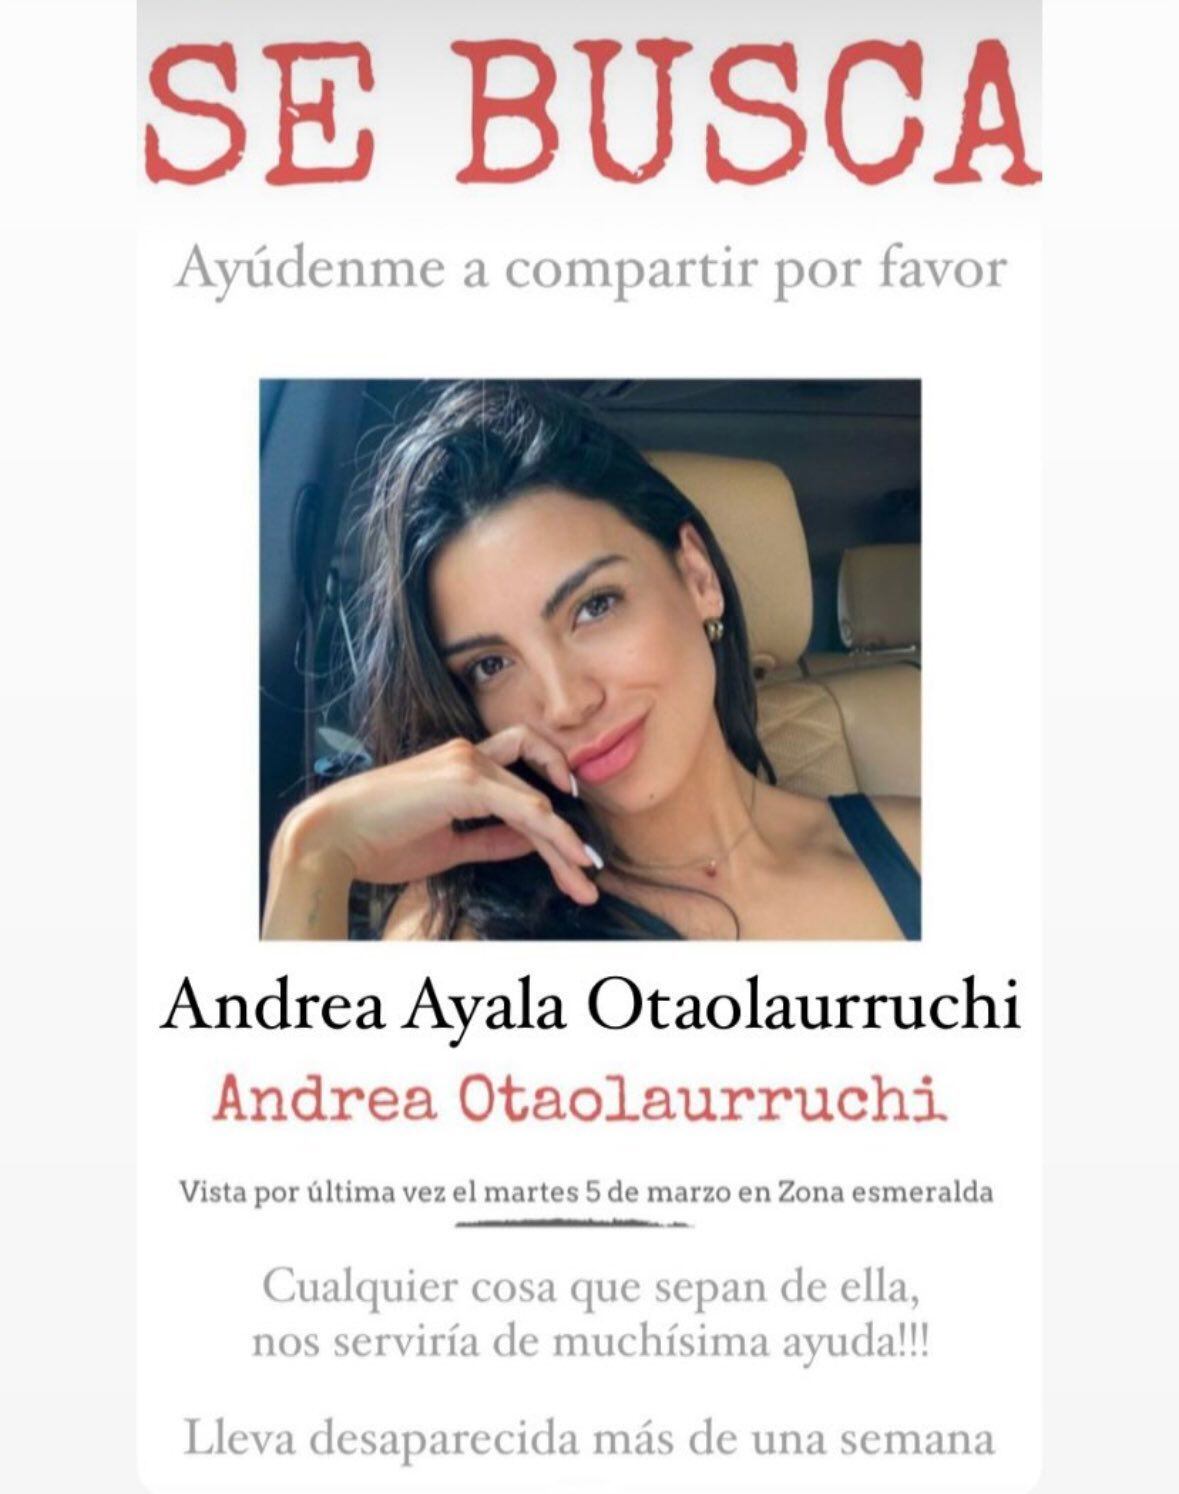 Imagen supuestamente compartida por 'Werevertumorro' sobre la desaparición de Andrea Otaolaurruchi. (Foto: X @TheDuben)